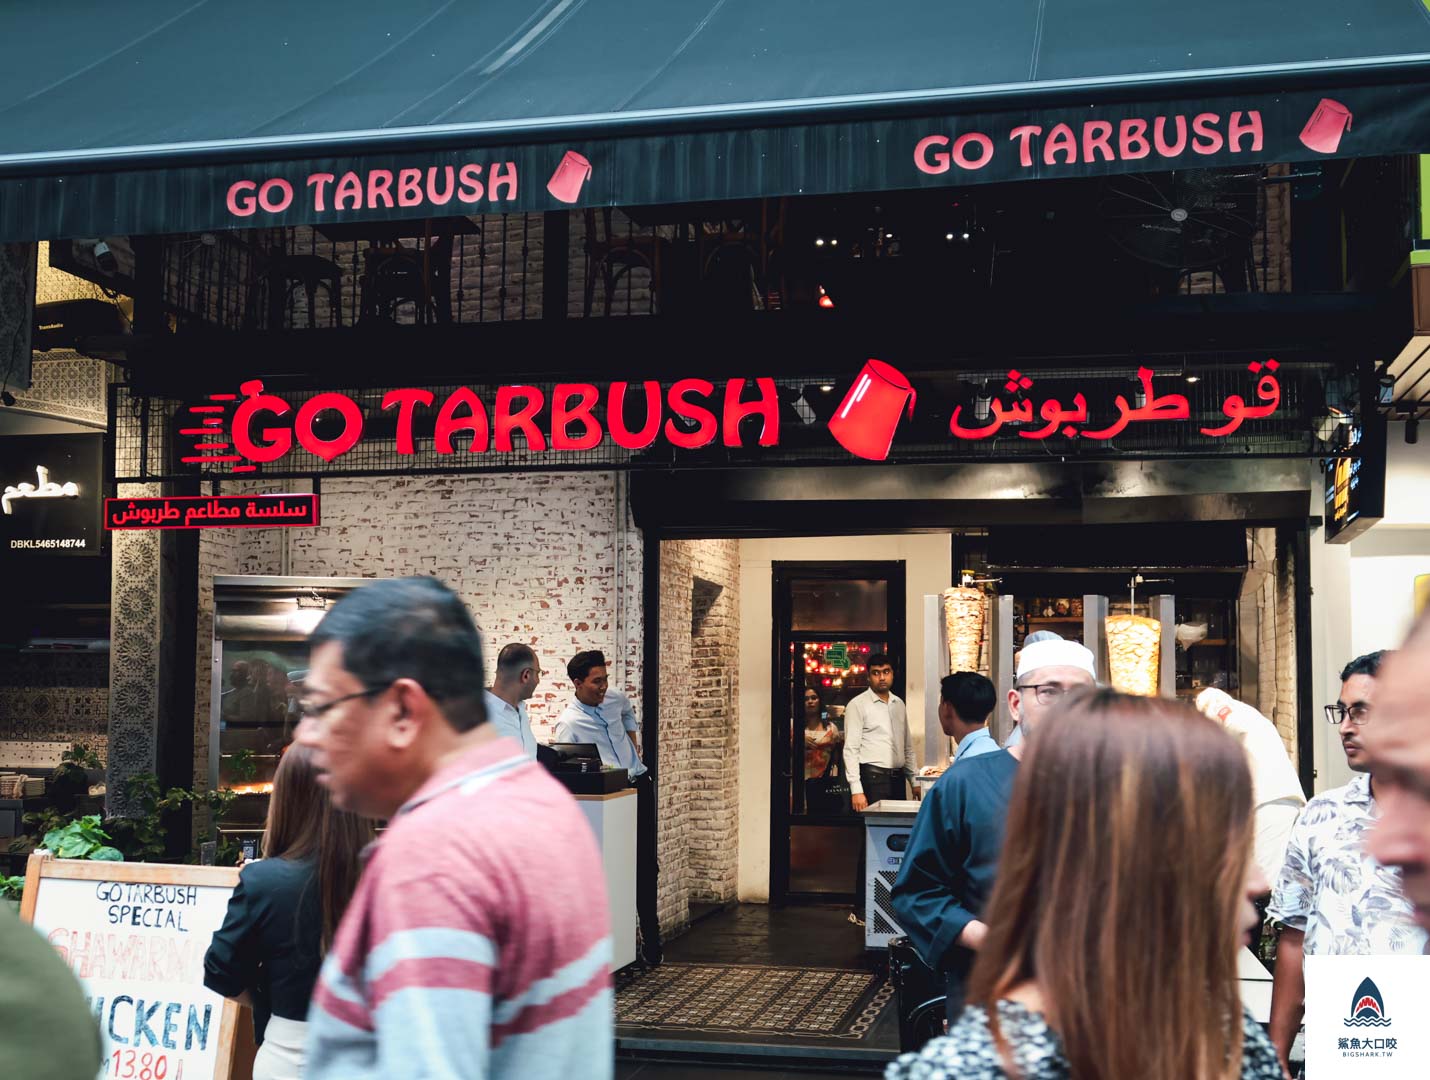 吉隆坡美食推薦,Tarbush Restaurant,吉隆坡沙威瑪,武吉免登美食推薦,武吉免登沙威瑪 @鯊魚大口咬